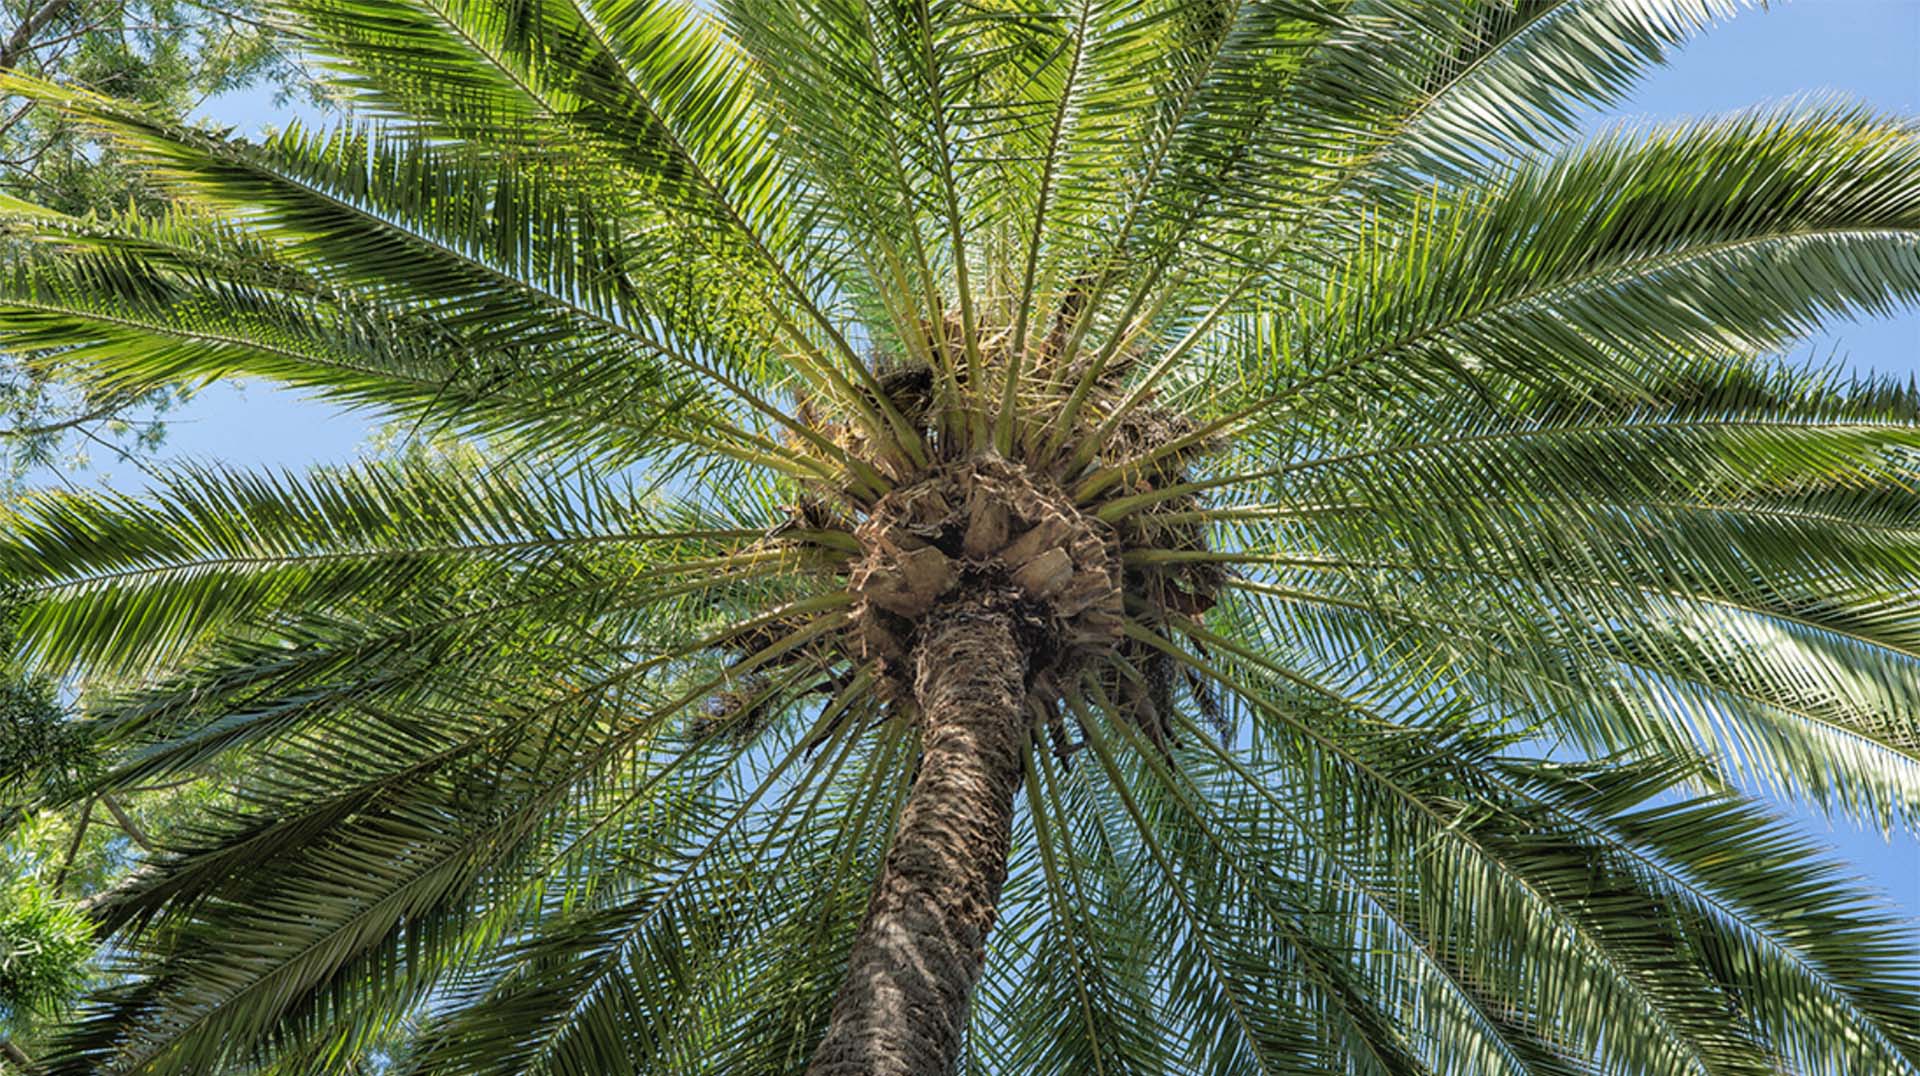 Palm | San Diego Zoo Animals & Plants